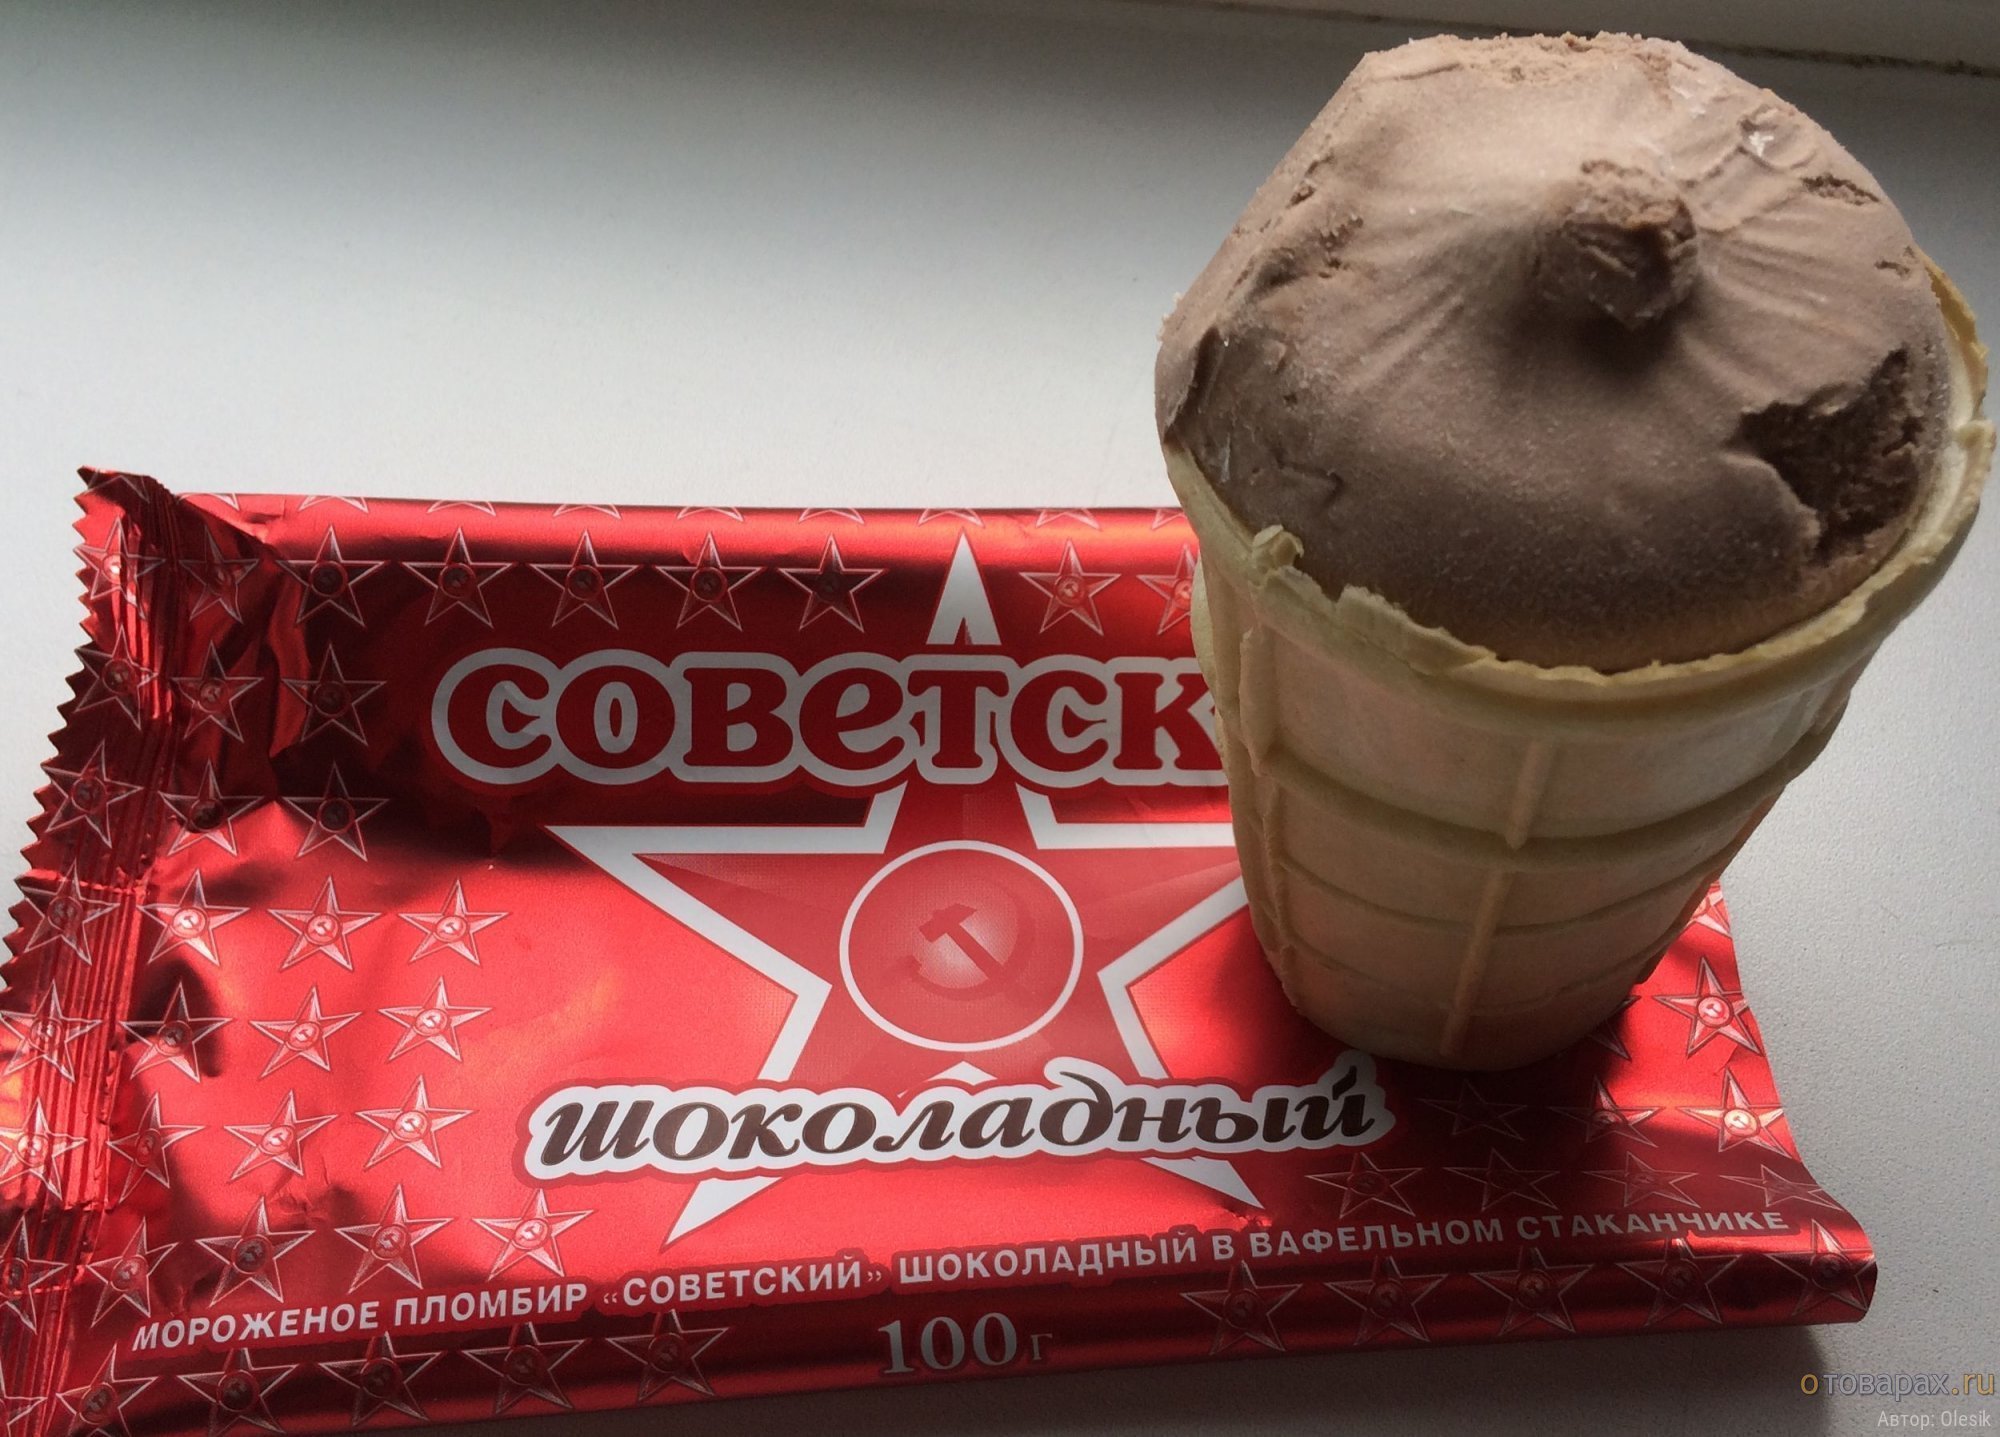 Мороженое советских времен. Советские мороженое пломбир эскимо. Мороженое Советский пломбир. Упаковка советского мороженого. Советское мороженое упаковка.